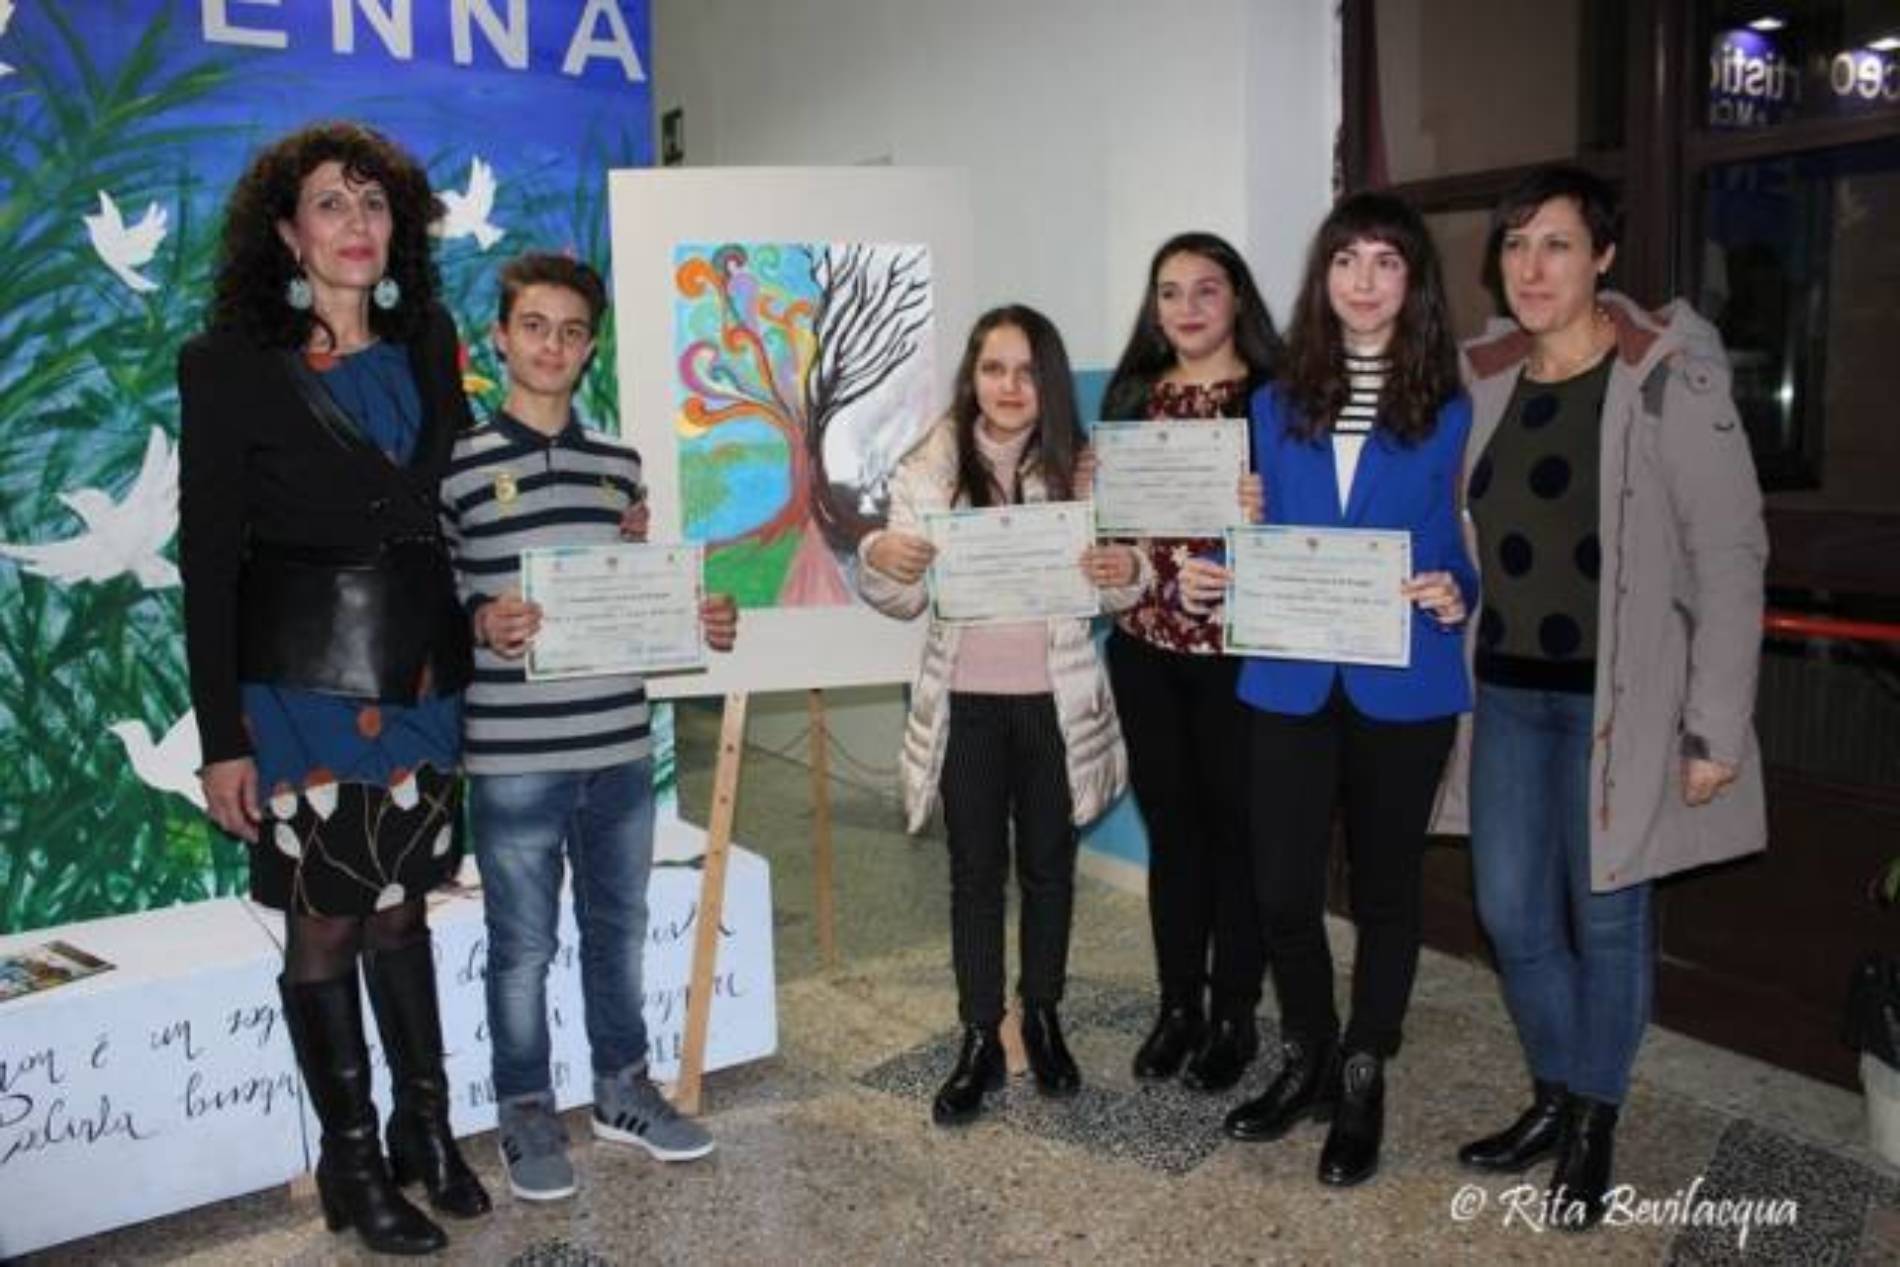 La classe 3B della scuola “Don Milani” di Barrafranca trionfa al concorso provinciale di pittura “Pace e Solidarietà: i colori della vita”